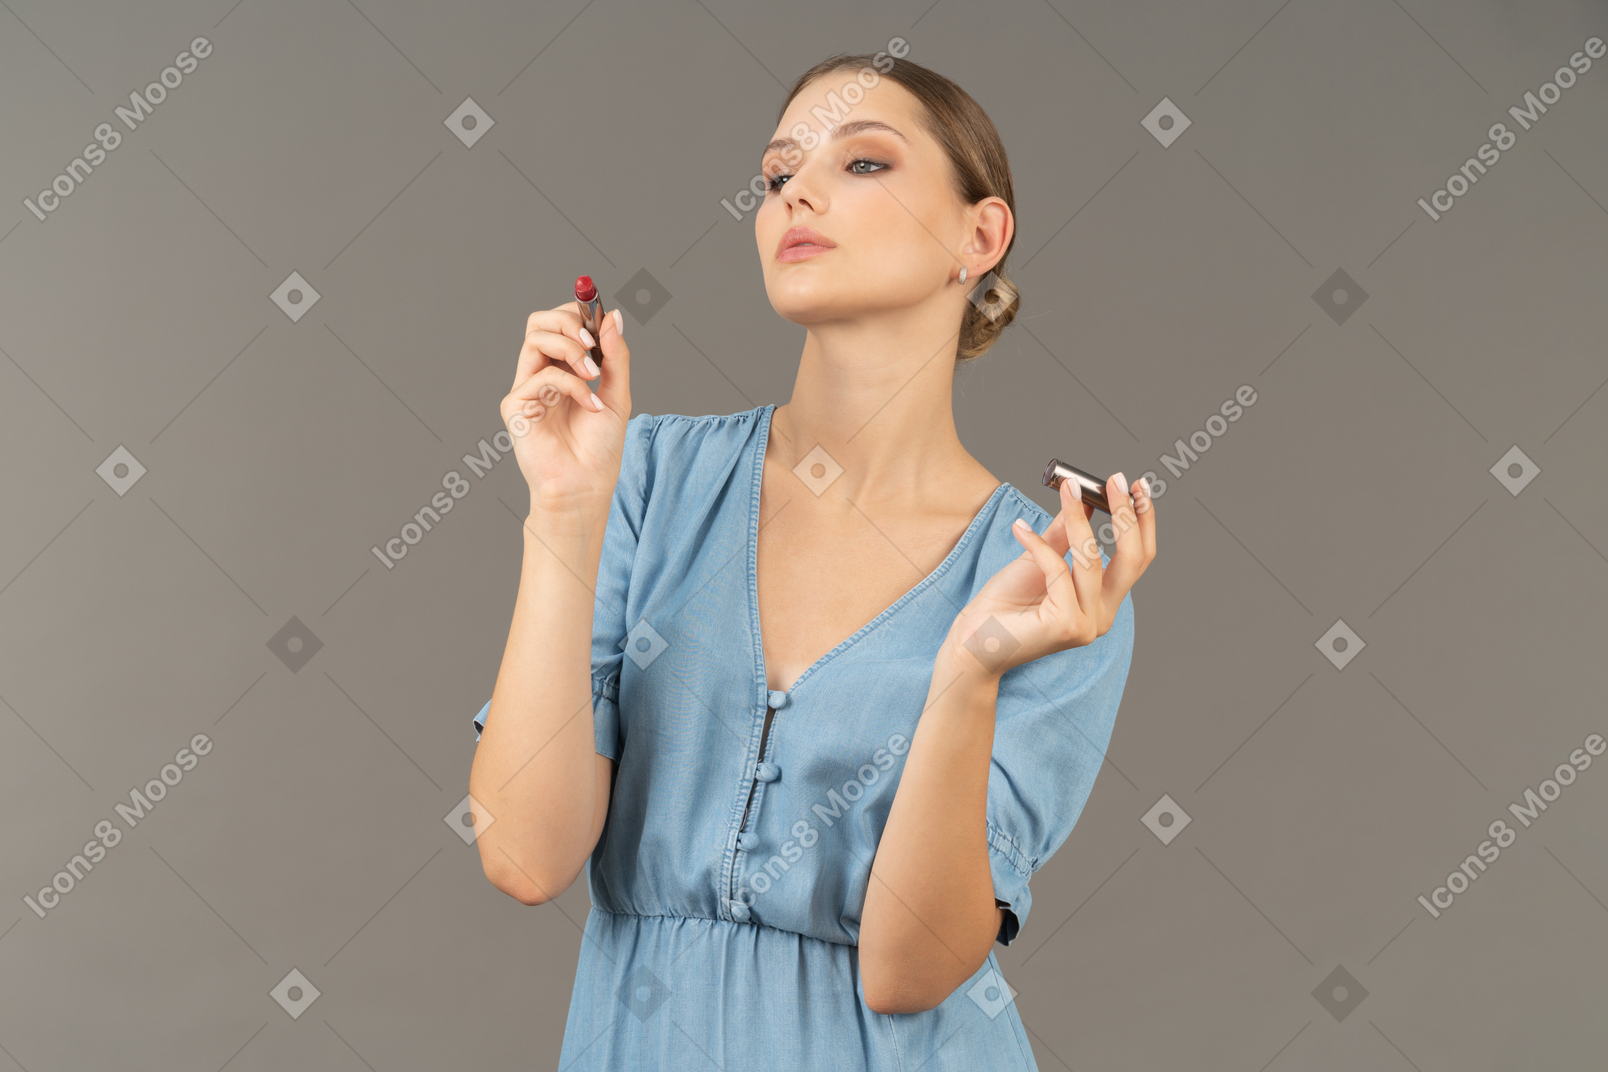 Vue de face d'une jeune femme en robe bleue tenant un rouge à lèvres